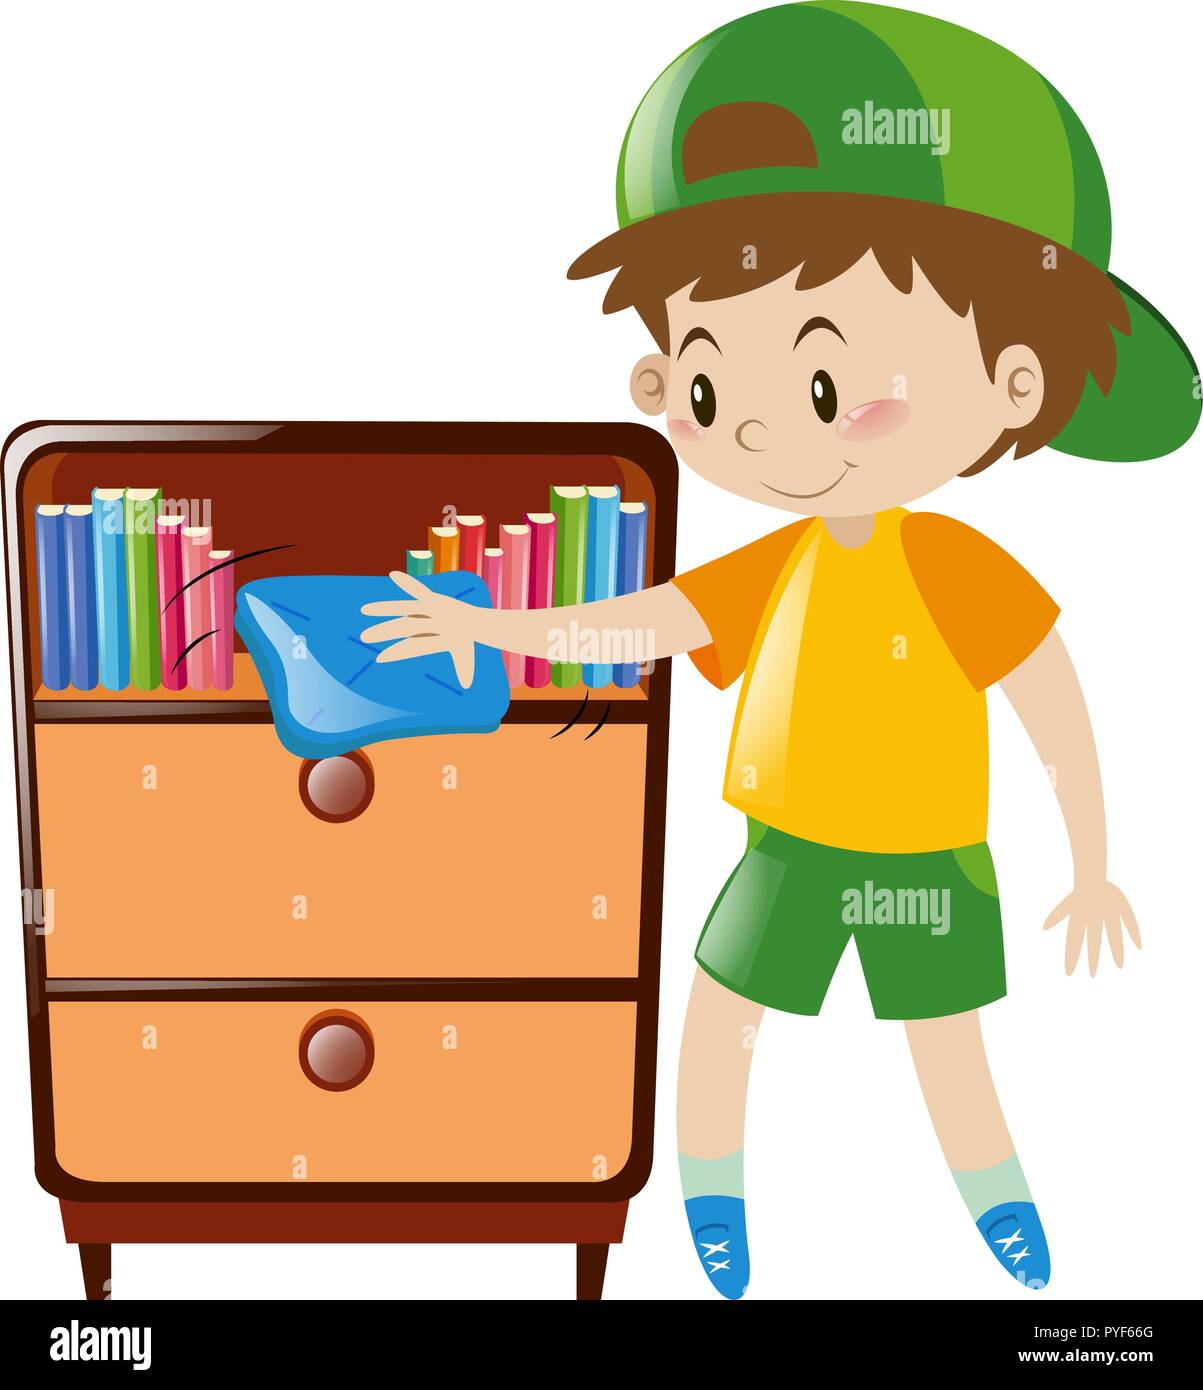 Boy cleaning shelf full of books illustration Stock Vector